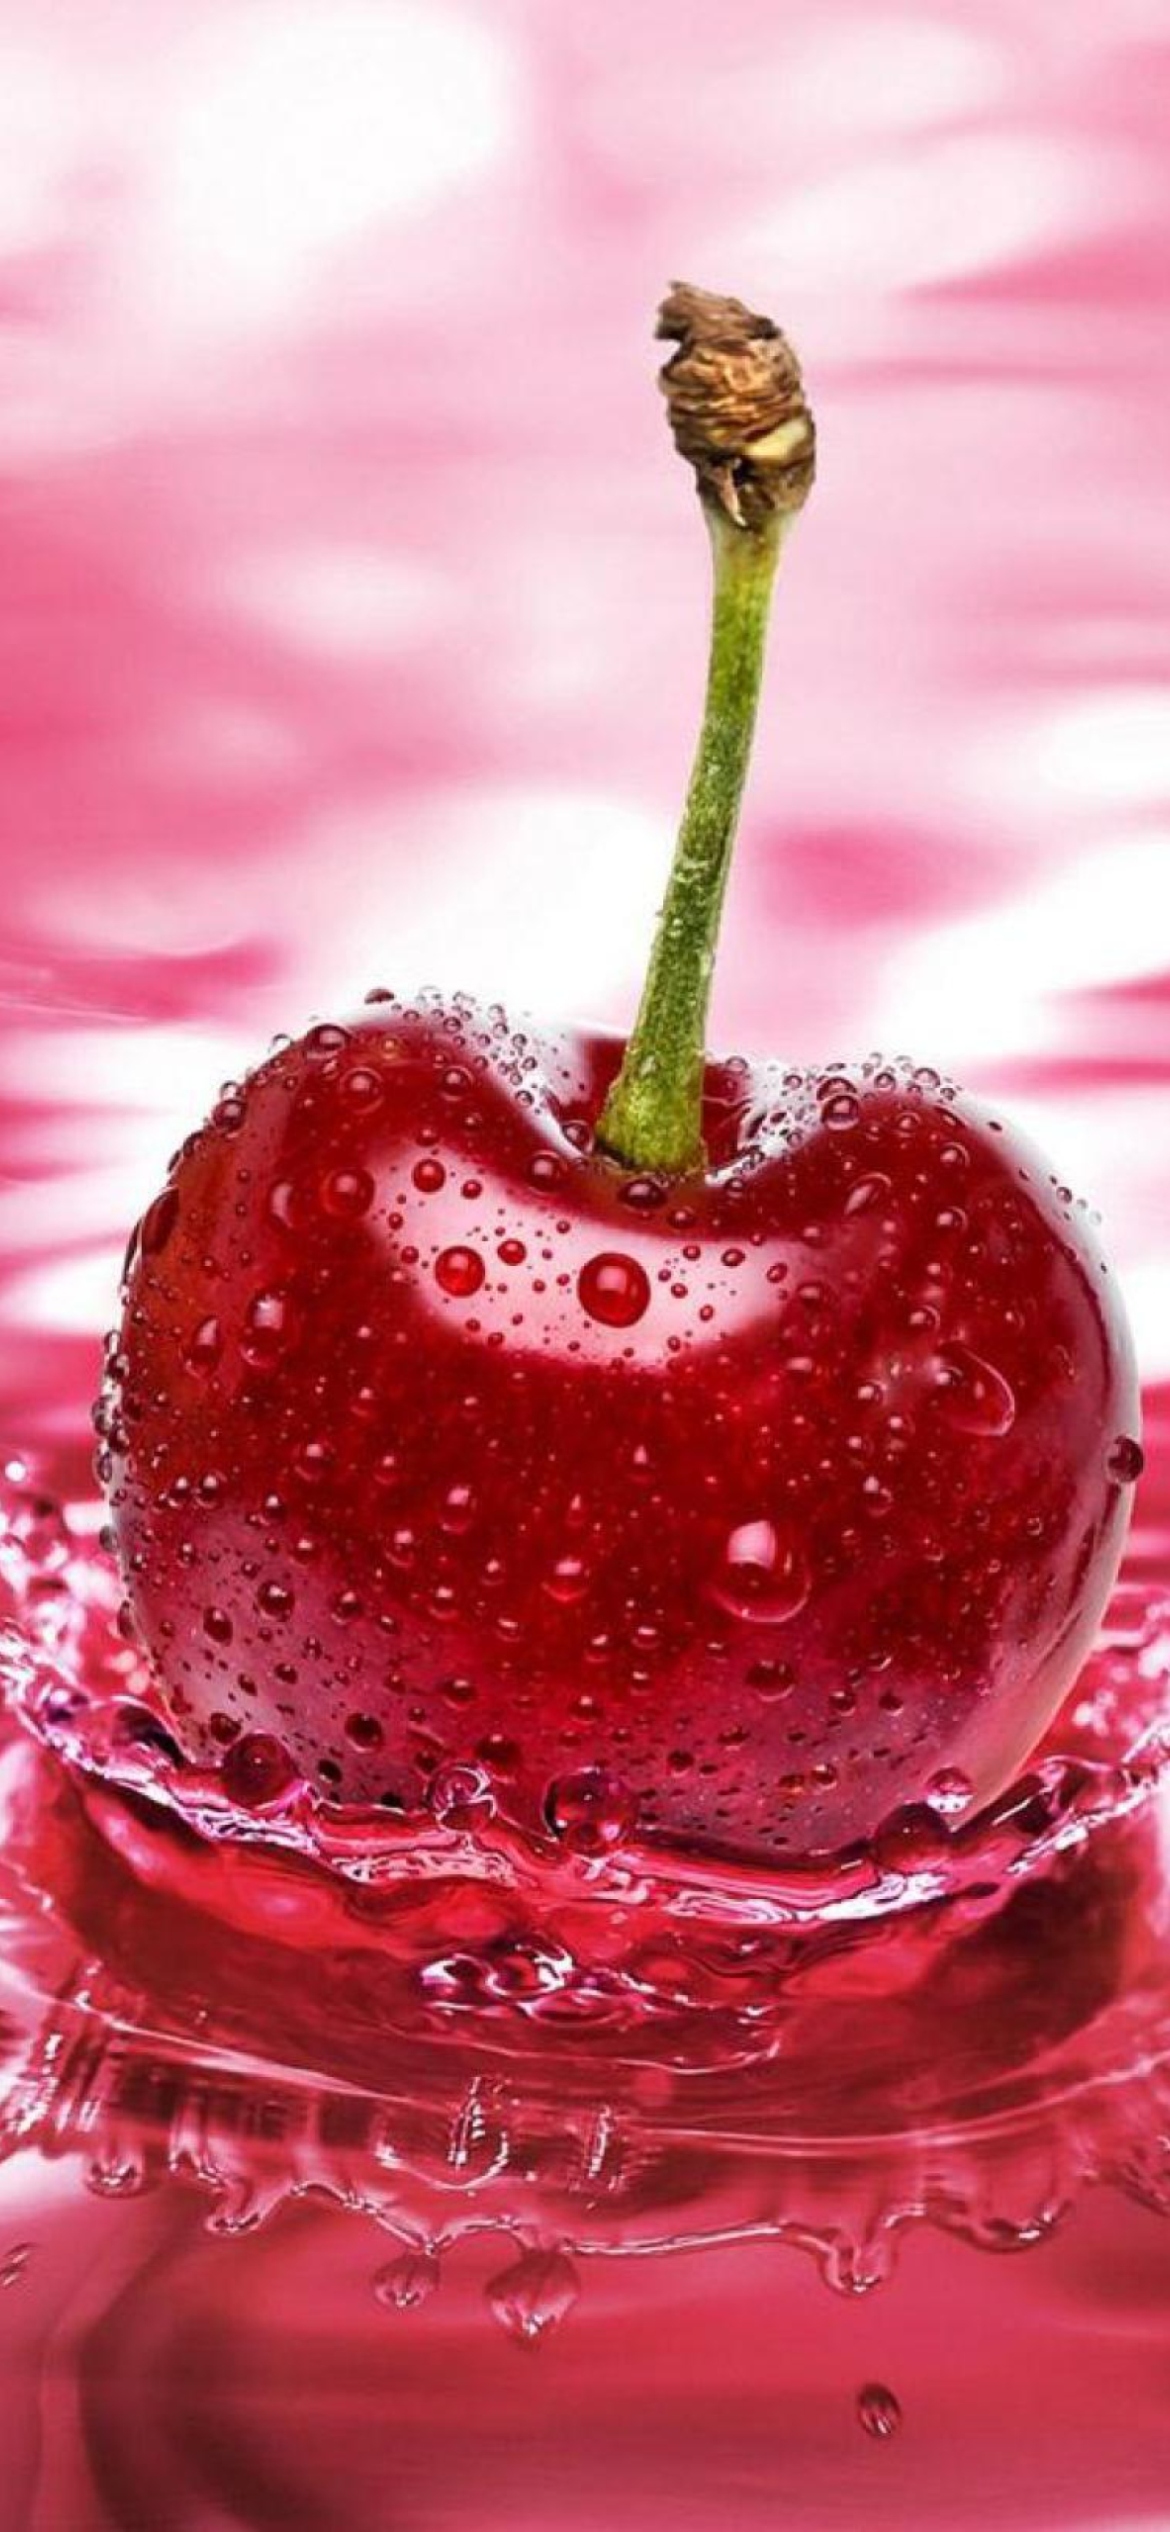 Sfondi Red Cherry Splash 1170x2532